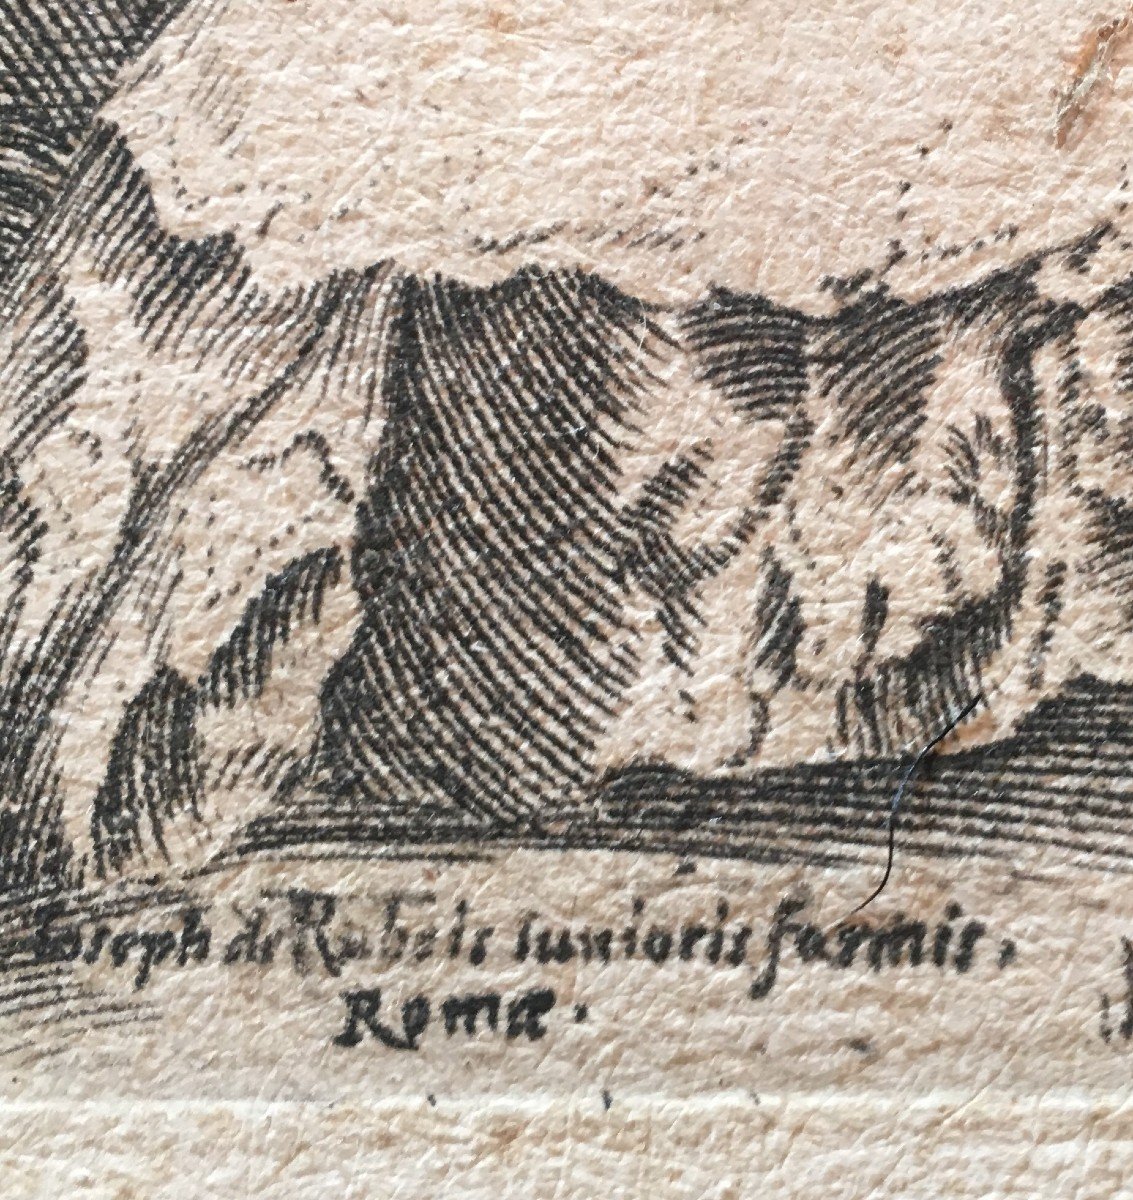 Eau-forte  "L'Enlèvement d'Hélène" d'après Raphael - graveur Marcantonio Raimondi XVI iéme . -photo-2